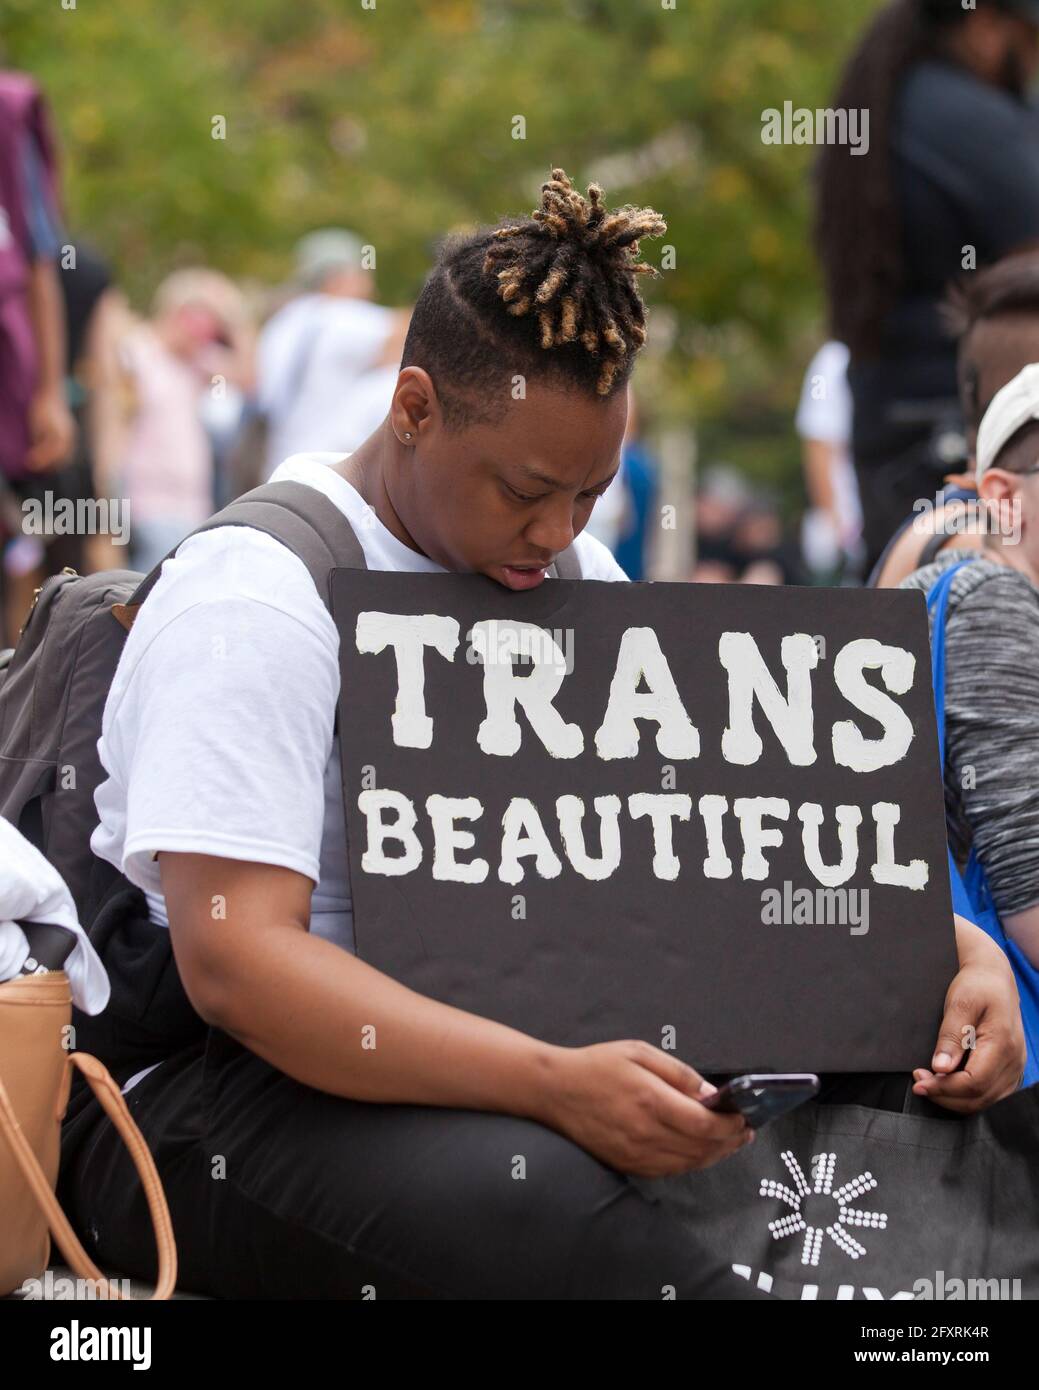 28 septembre 2019 - Washington, DC Etats-Unis: Les militants des droits transgenres et la famille se réunissent pour sensibiliser la population lors de la Marche nationale de visibilité transgenre Banque D'Images